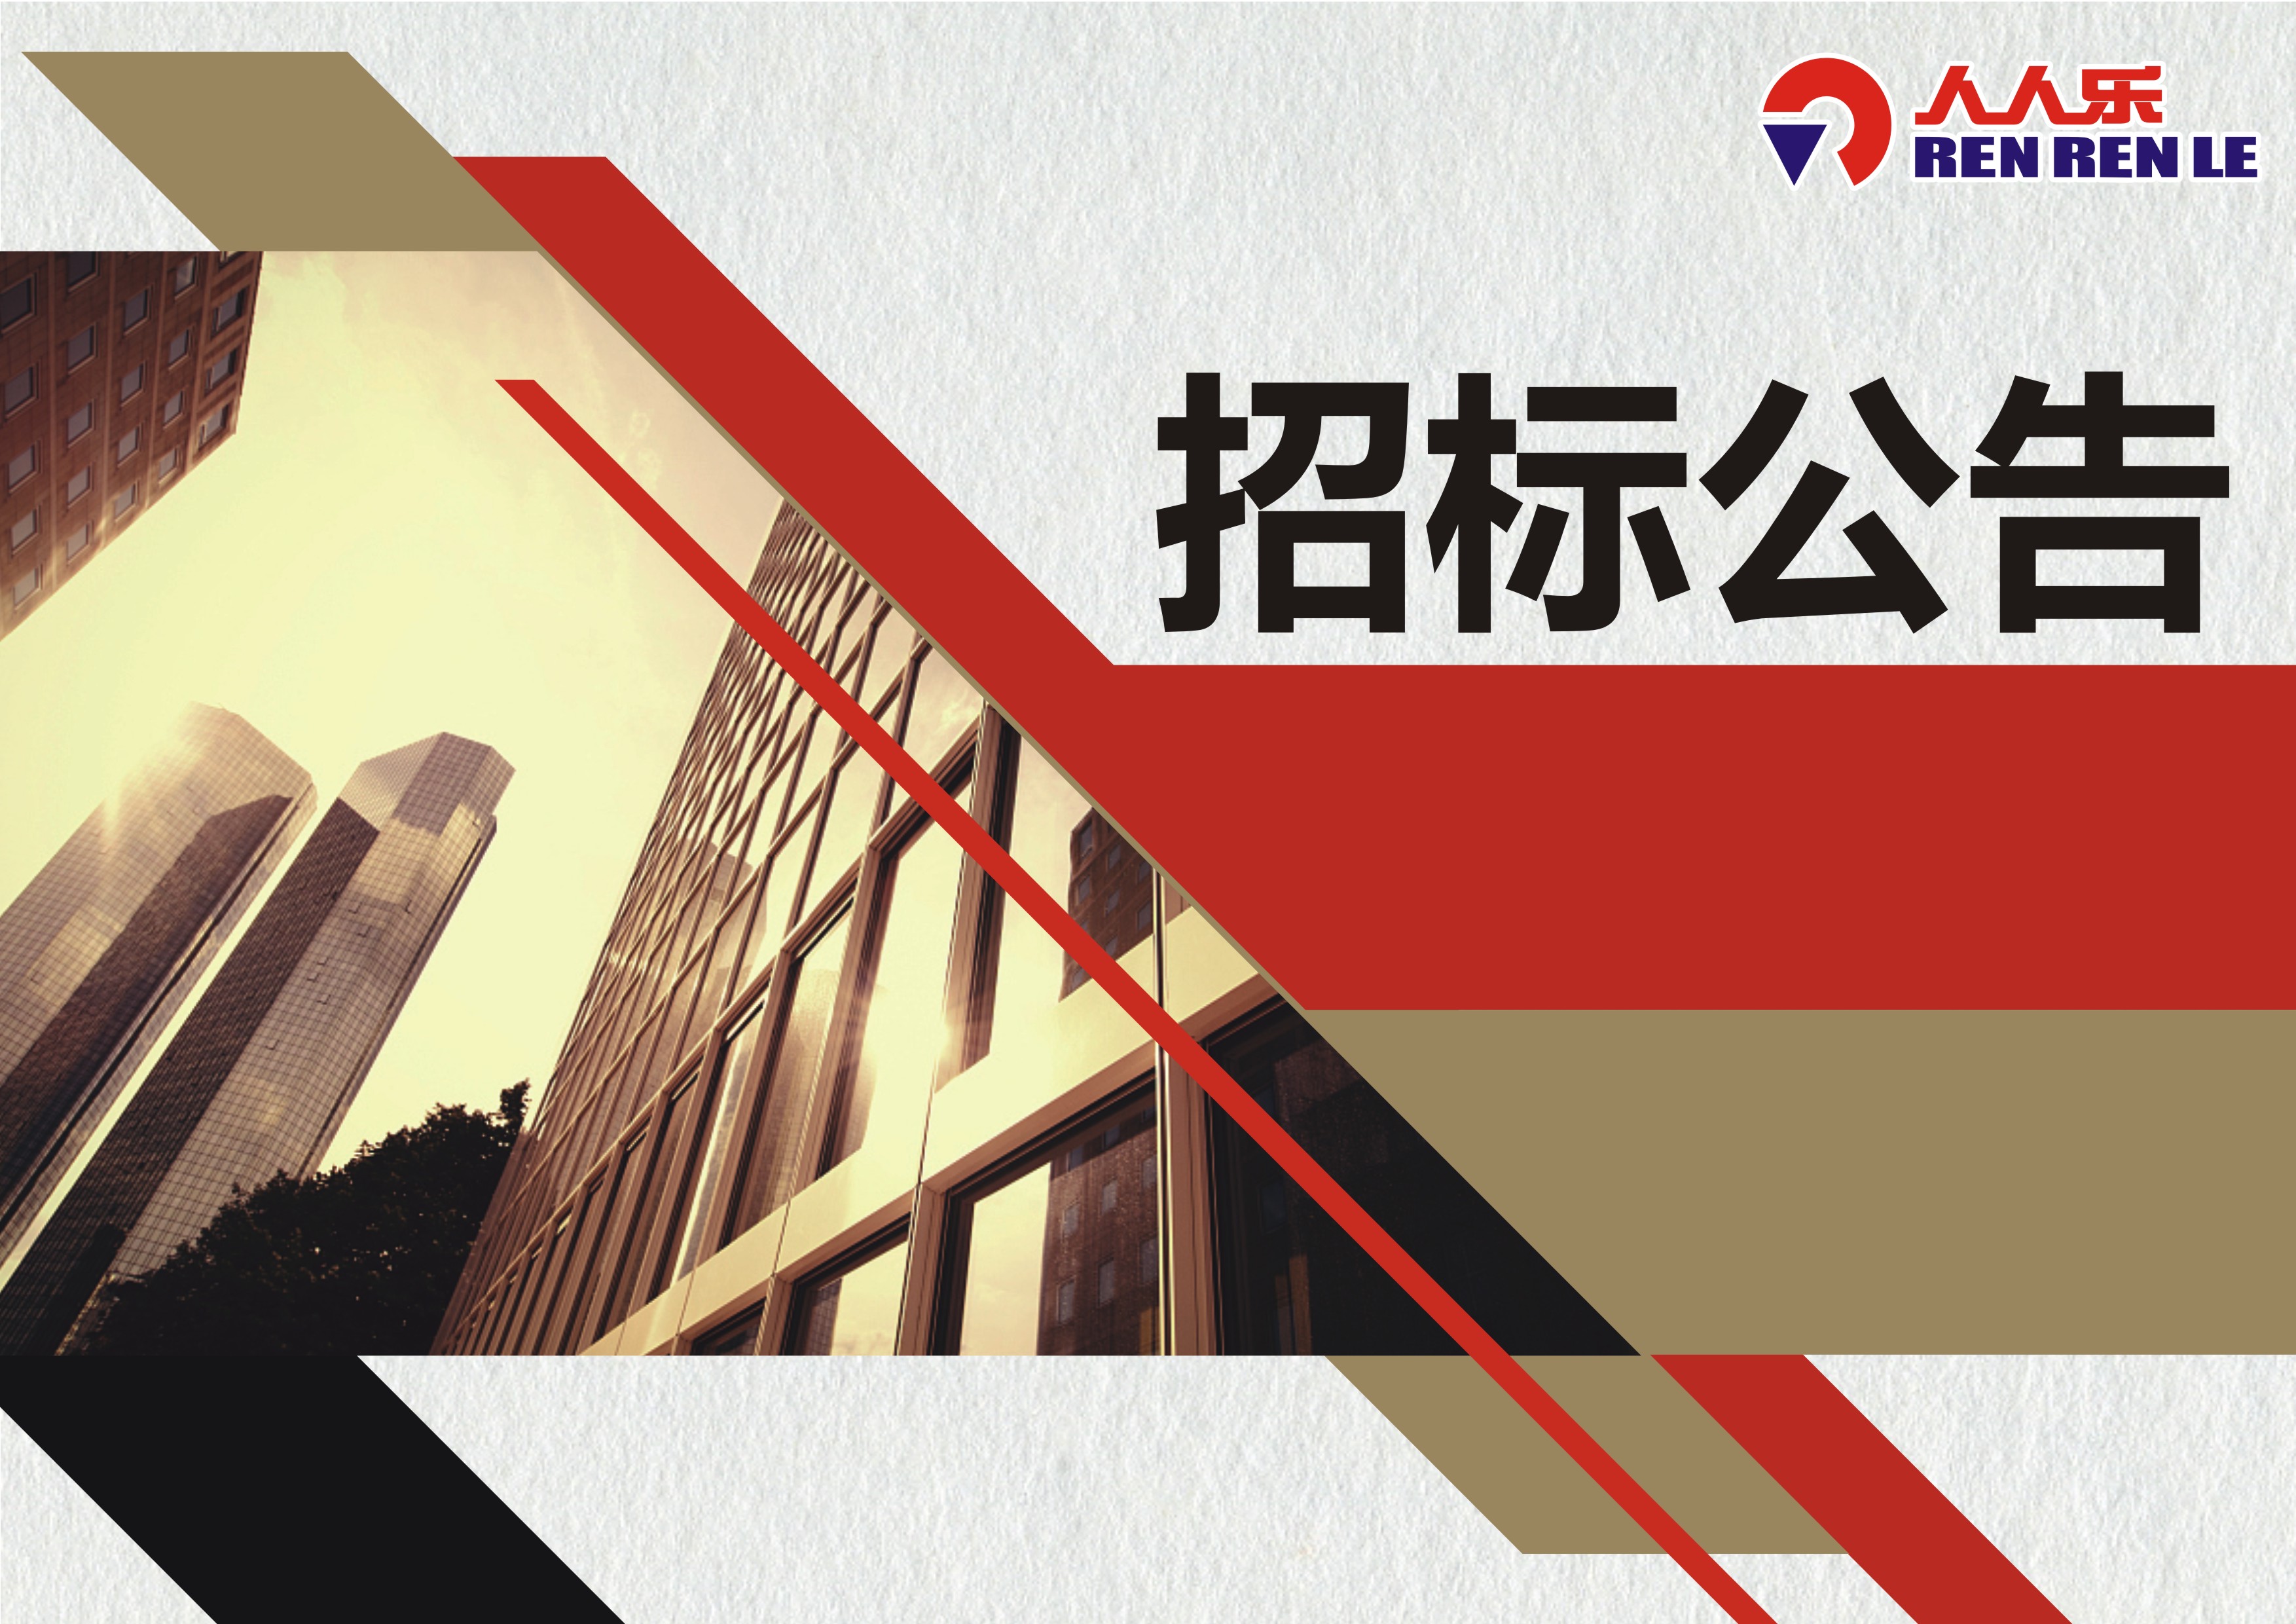 天津市人人乐商业有限公司  建筑消防设施、电气消防安全检测项目招标公告